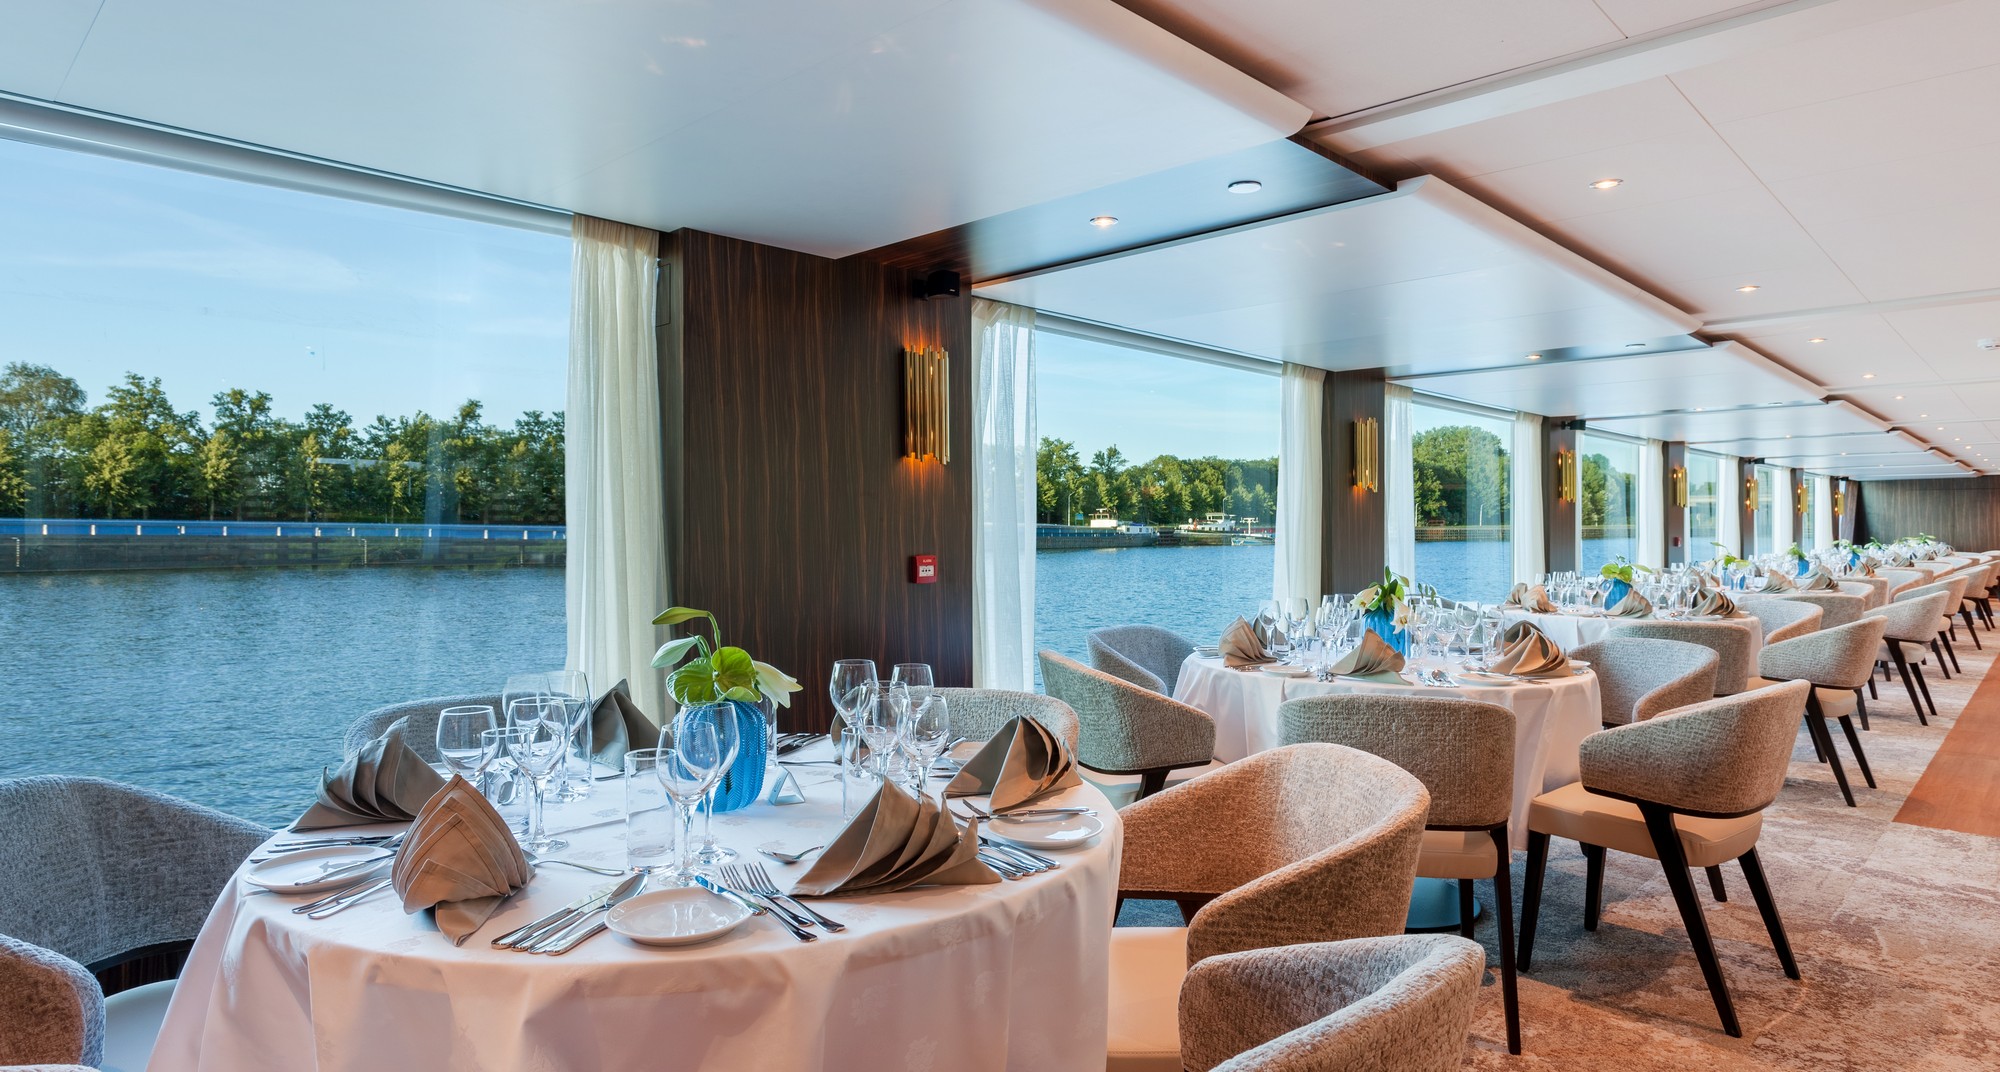 Amadeus Imperial luxe riviercruise restaurant